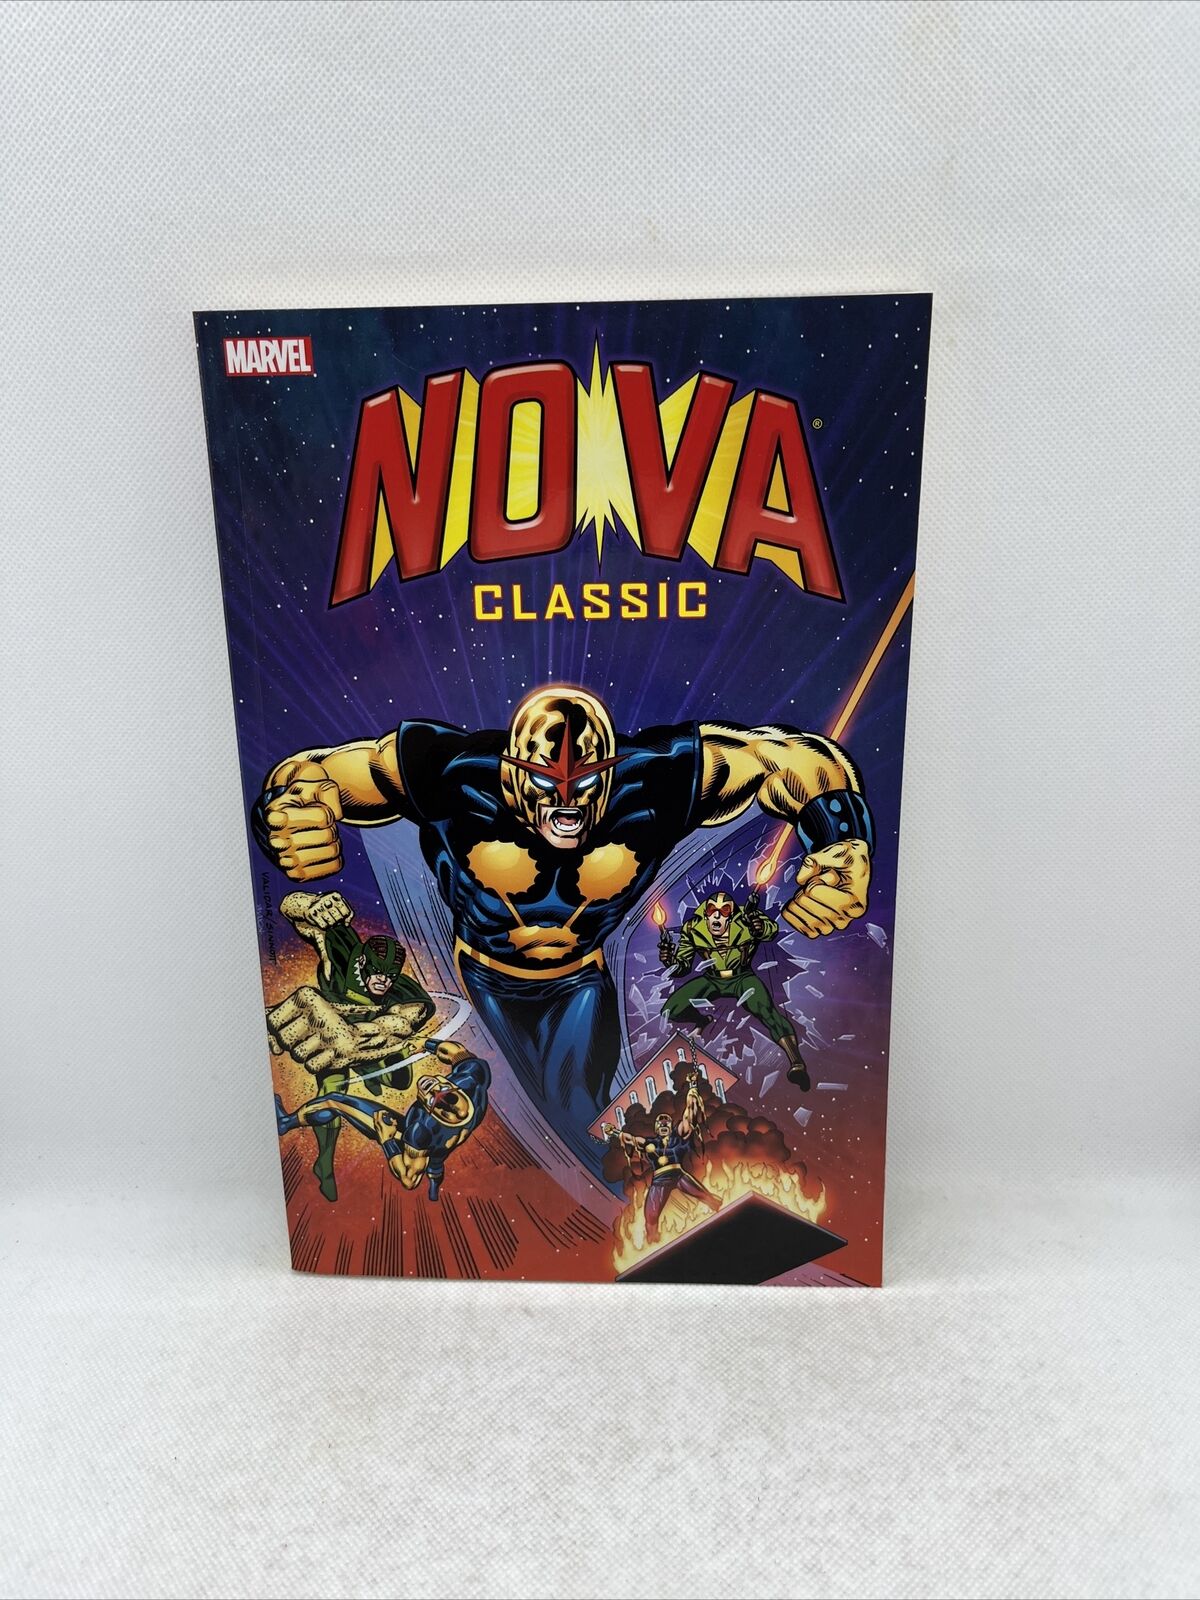 Nova Classic Volume #2 (Marvel, December 2013) Graphic Novel 